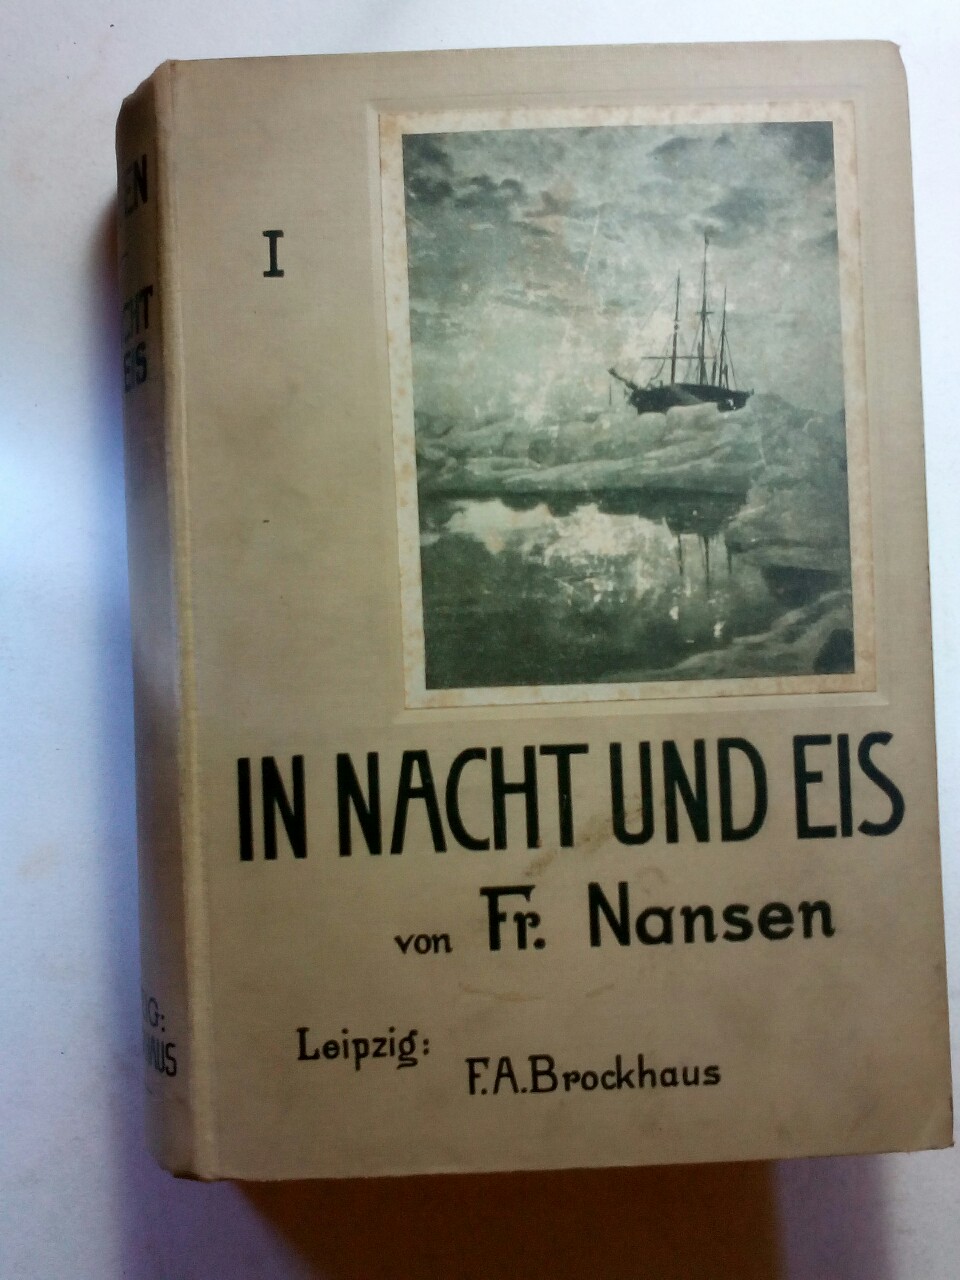 In Nacht und Eis. Die Norwegische Polarexpedition 1893 - 1896. Erster Band - Nansen Fridtjof